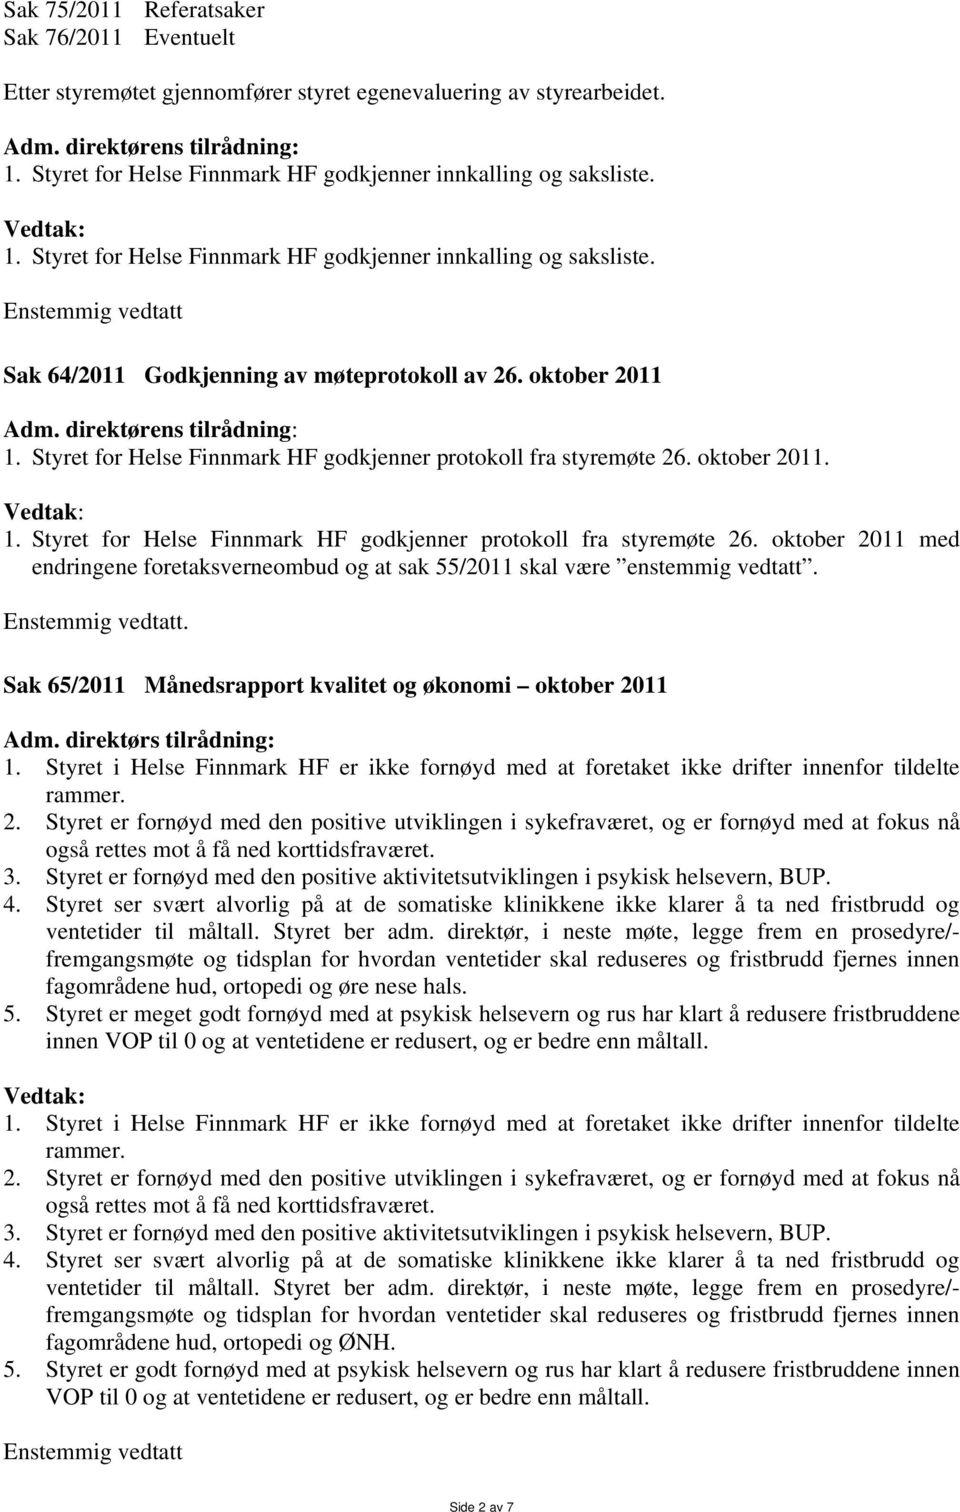 direktørens tilrådning: 1. Styret for Helse Finnmark HF godkjenner protokoll fra styremøte 26. oktober 2011. 1. Styret for Helse Finnmark HF godkjenner protokoll fra styremøte 26. oktober 2011 med endringene foretaksverneombud og at sak 55/2011 skal være enstemmig vedtatt.